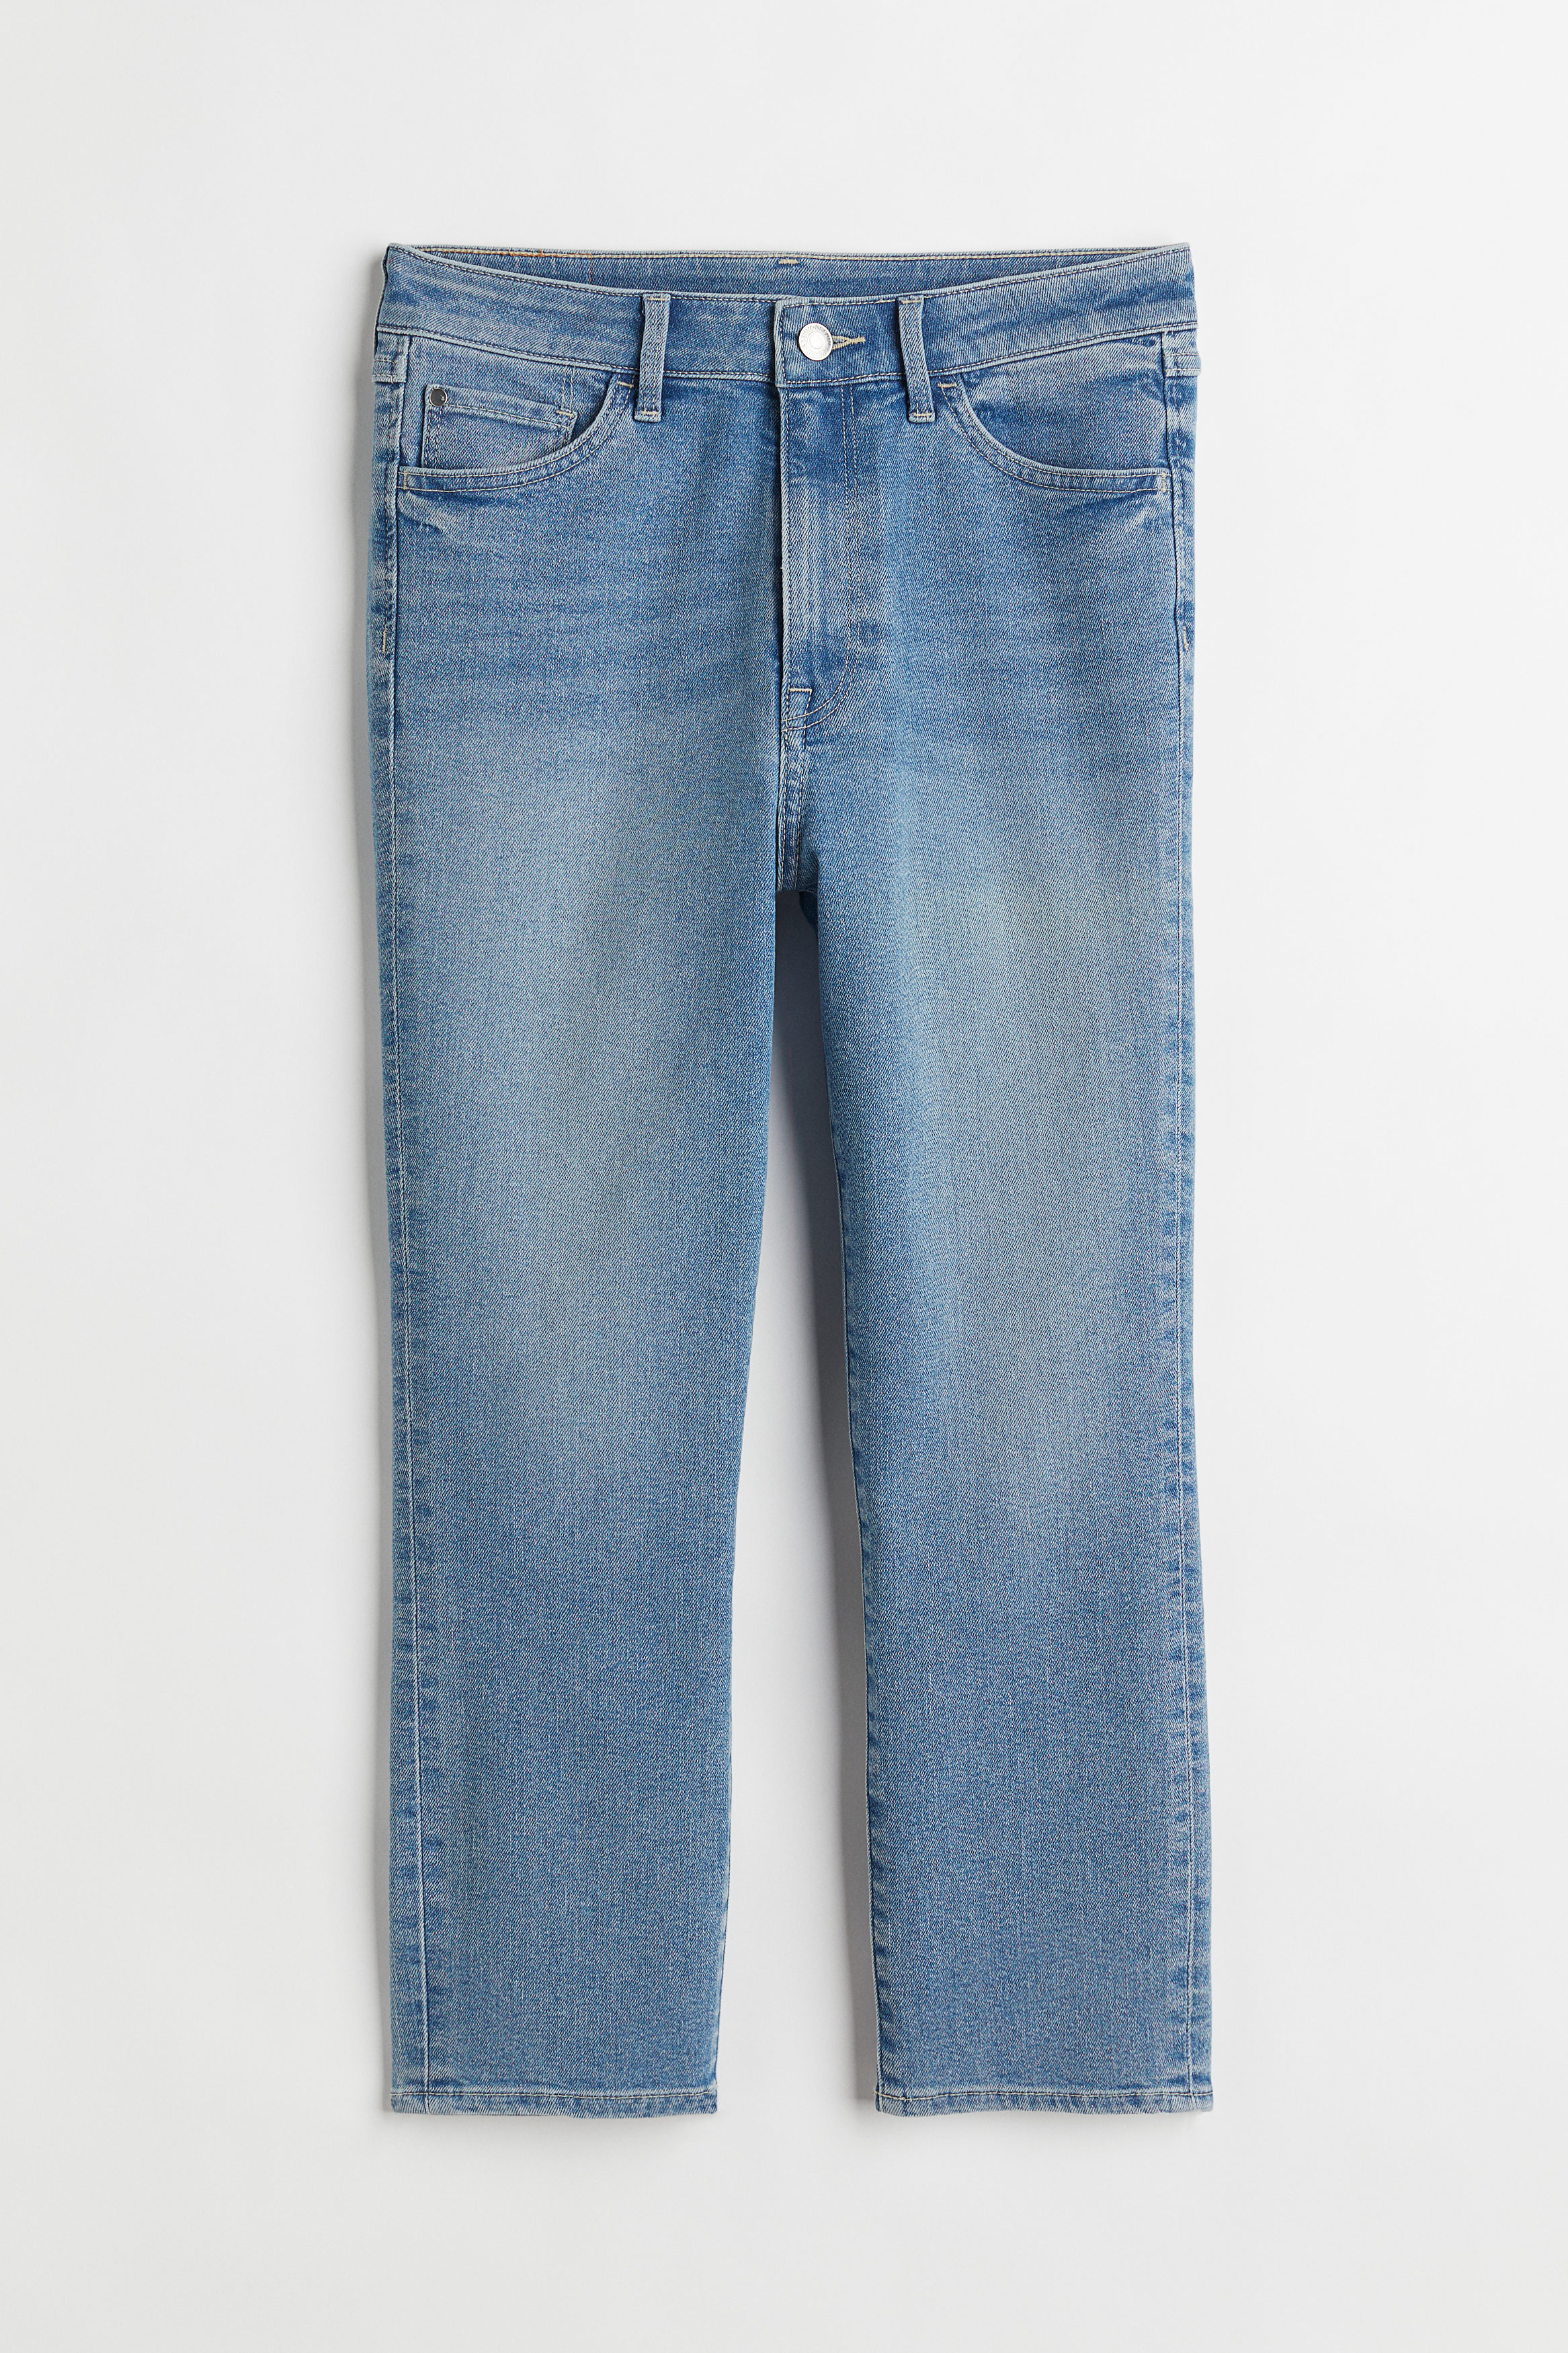 H&M Skinny High Cropped Jeans Denimblå, jeans. Farve: Denim blue 009 I størrelse 36